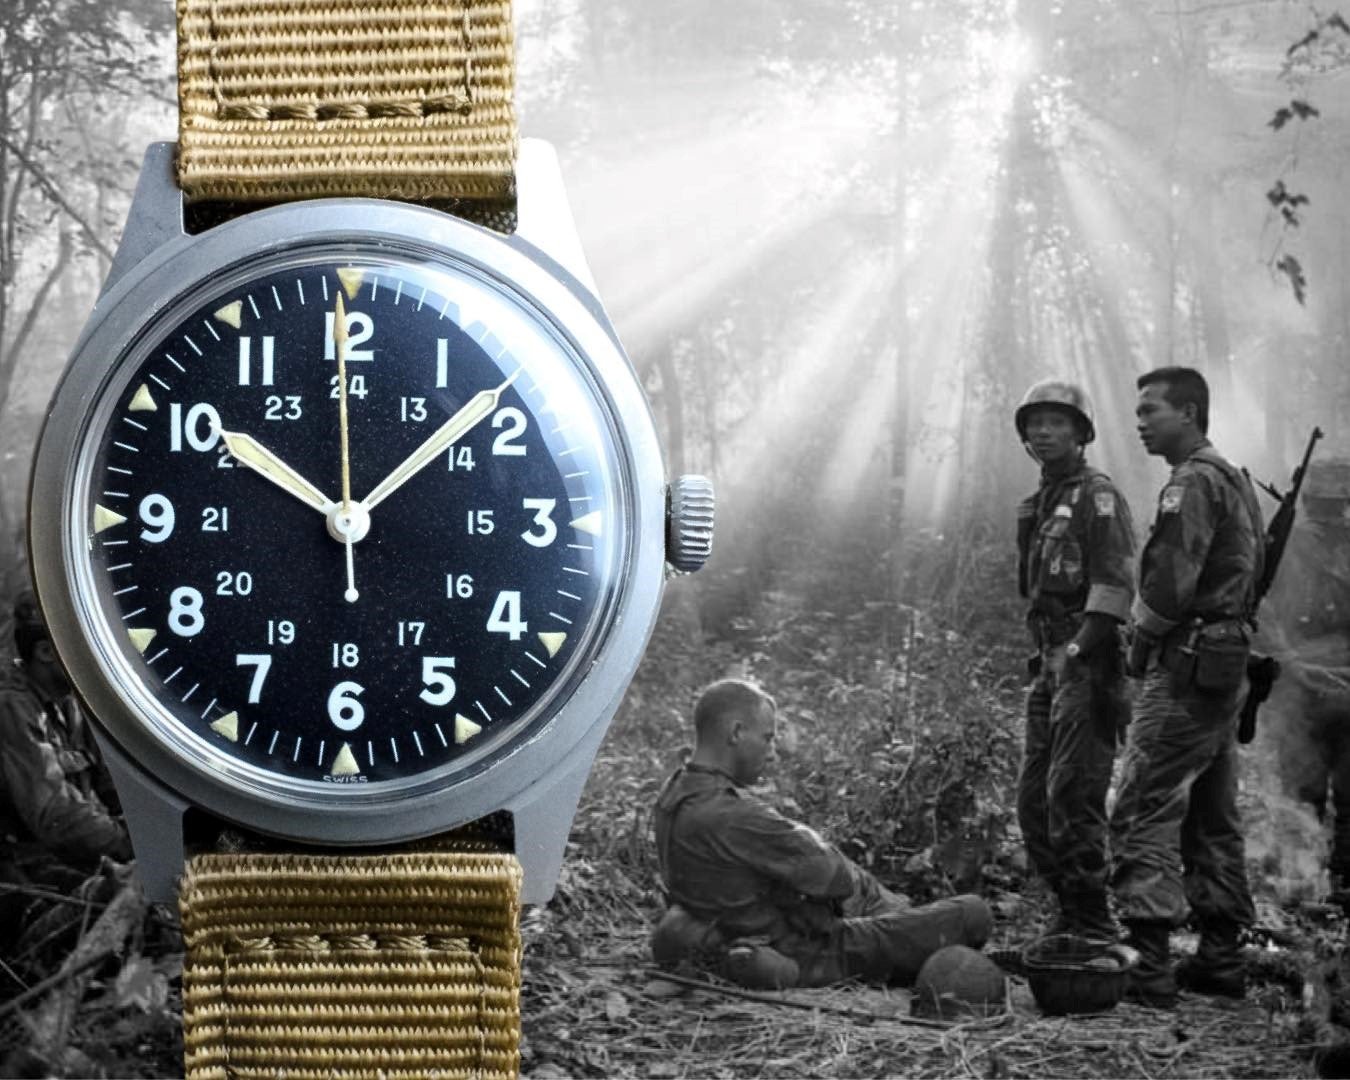 Vintage: Vietnam War Era Military Field Watches The Time Bum | art-kk.com